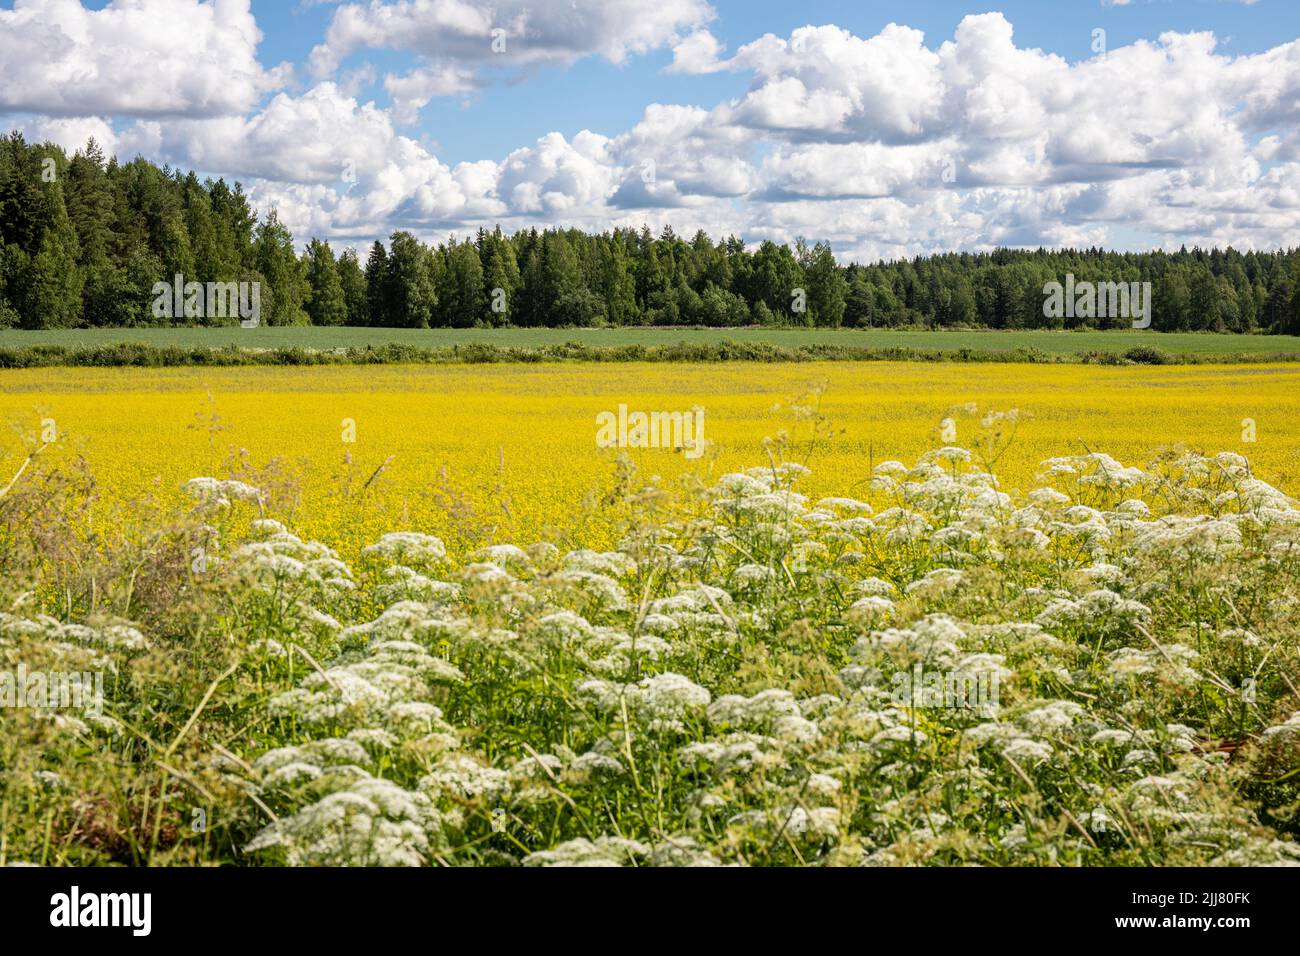 Rural landscape. Roadside plants, canola field, oat field and forest. Orivesi, Finland Stock Photo